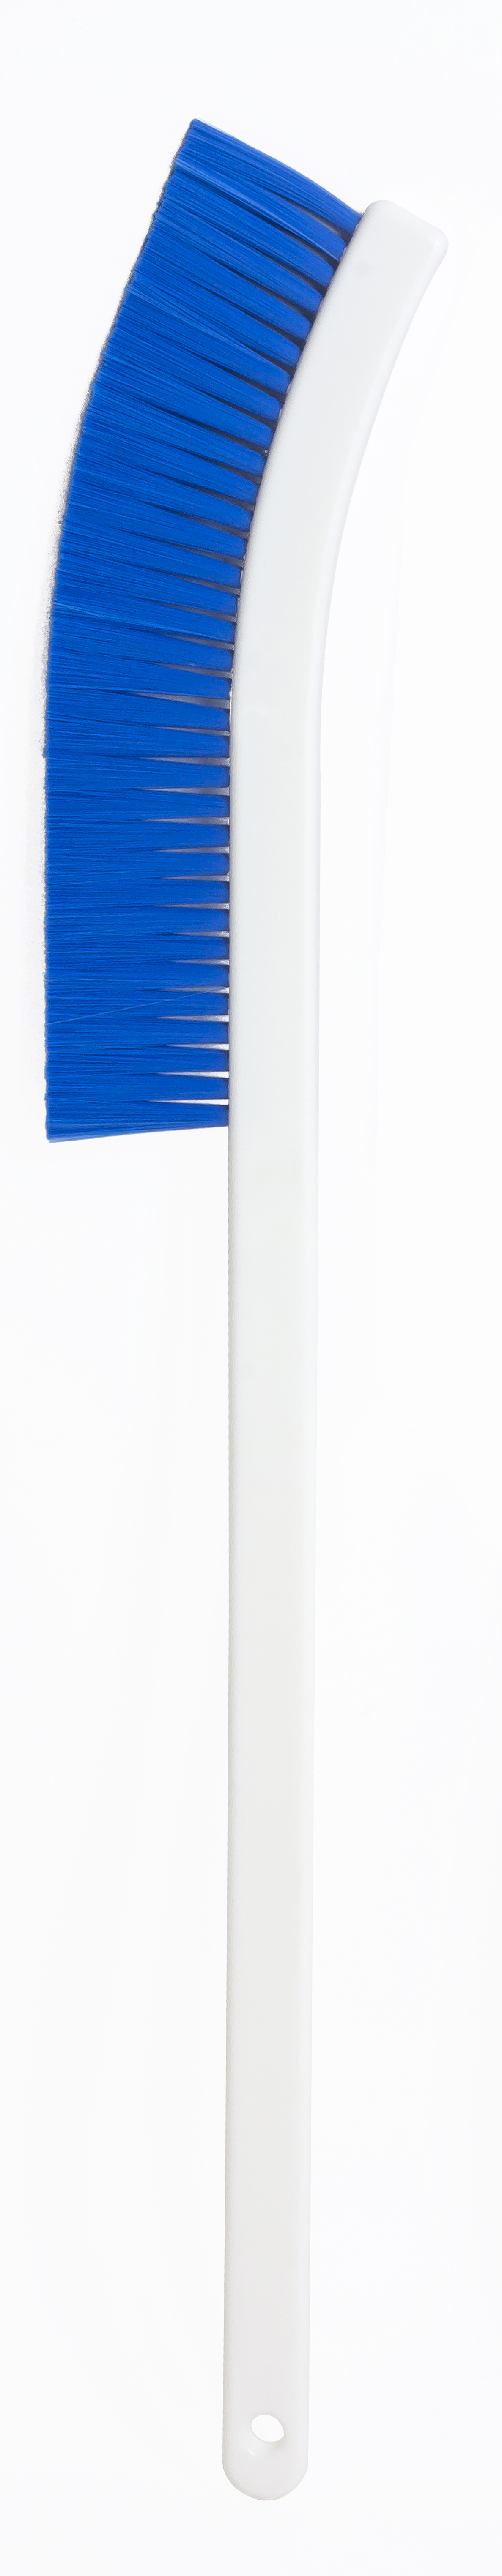 Щетка HACCPER для слайсера, куттера, узкая, 600 мм, синяя